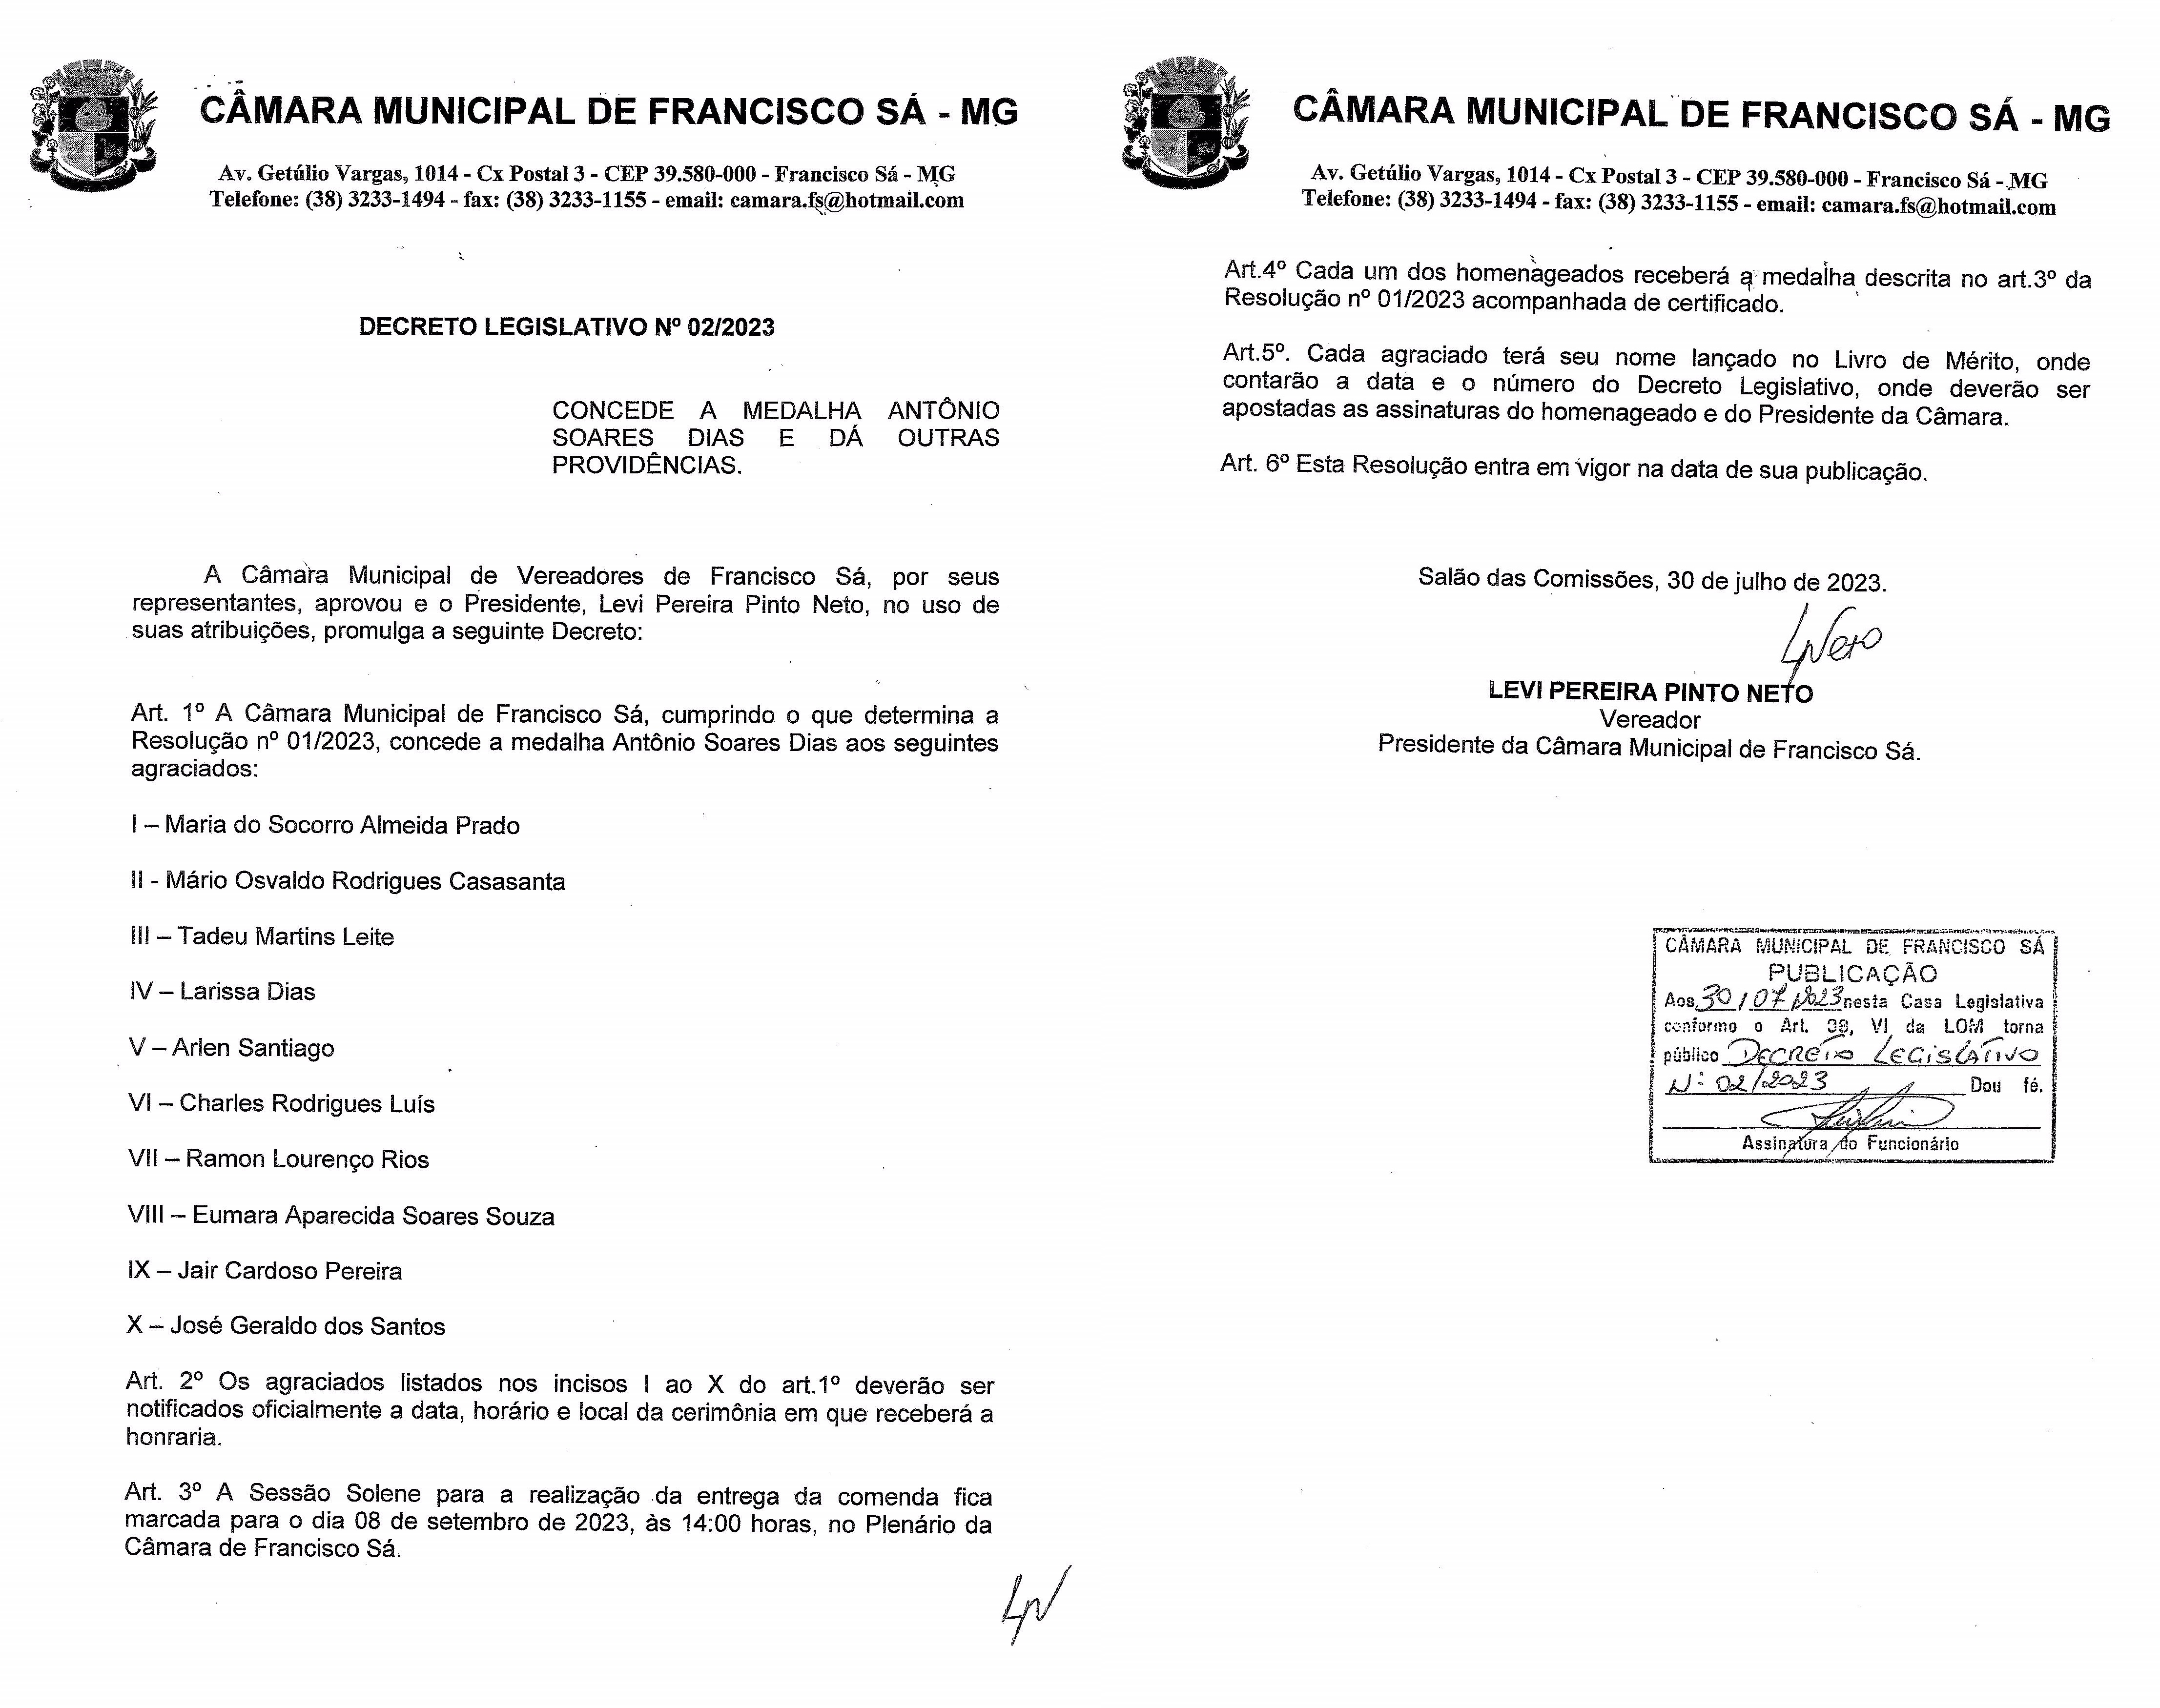 Decreto Legislativo Nº 02/2023